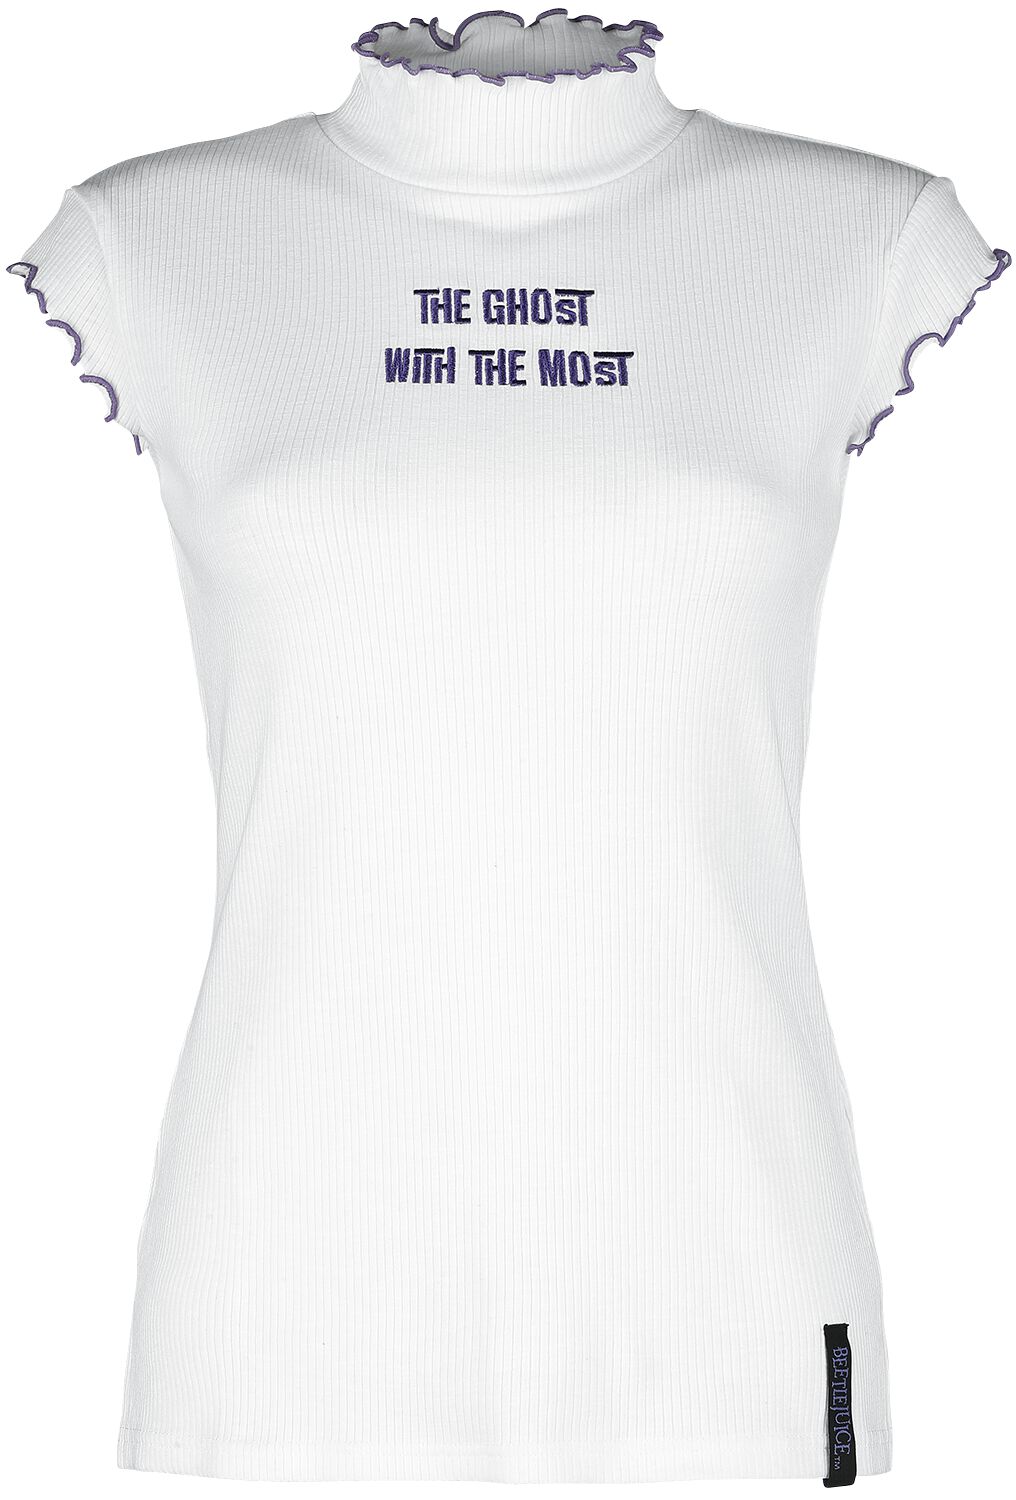 Beetlejuice T-Shirt - Ghost With The Most - XS bis XXL - für Damen - Größe XL - weiß  - EMP exklusives Merchandise!